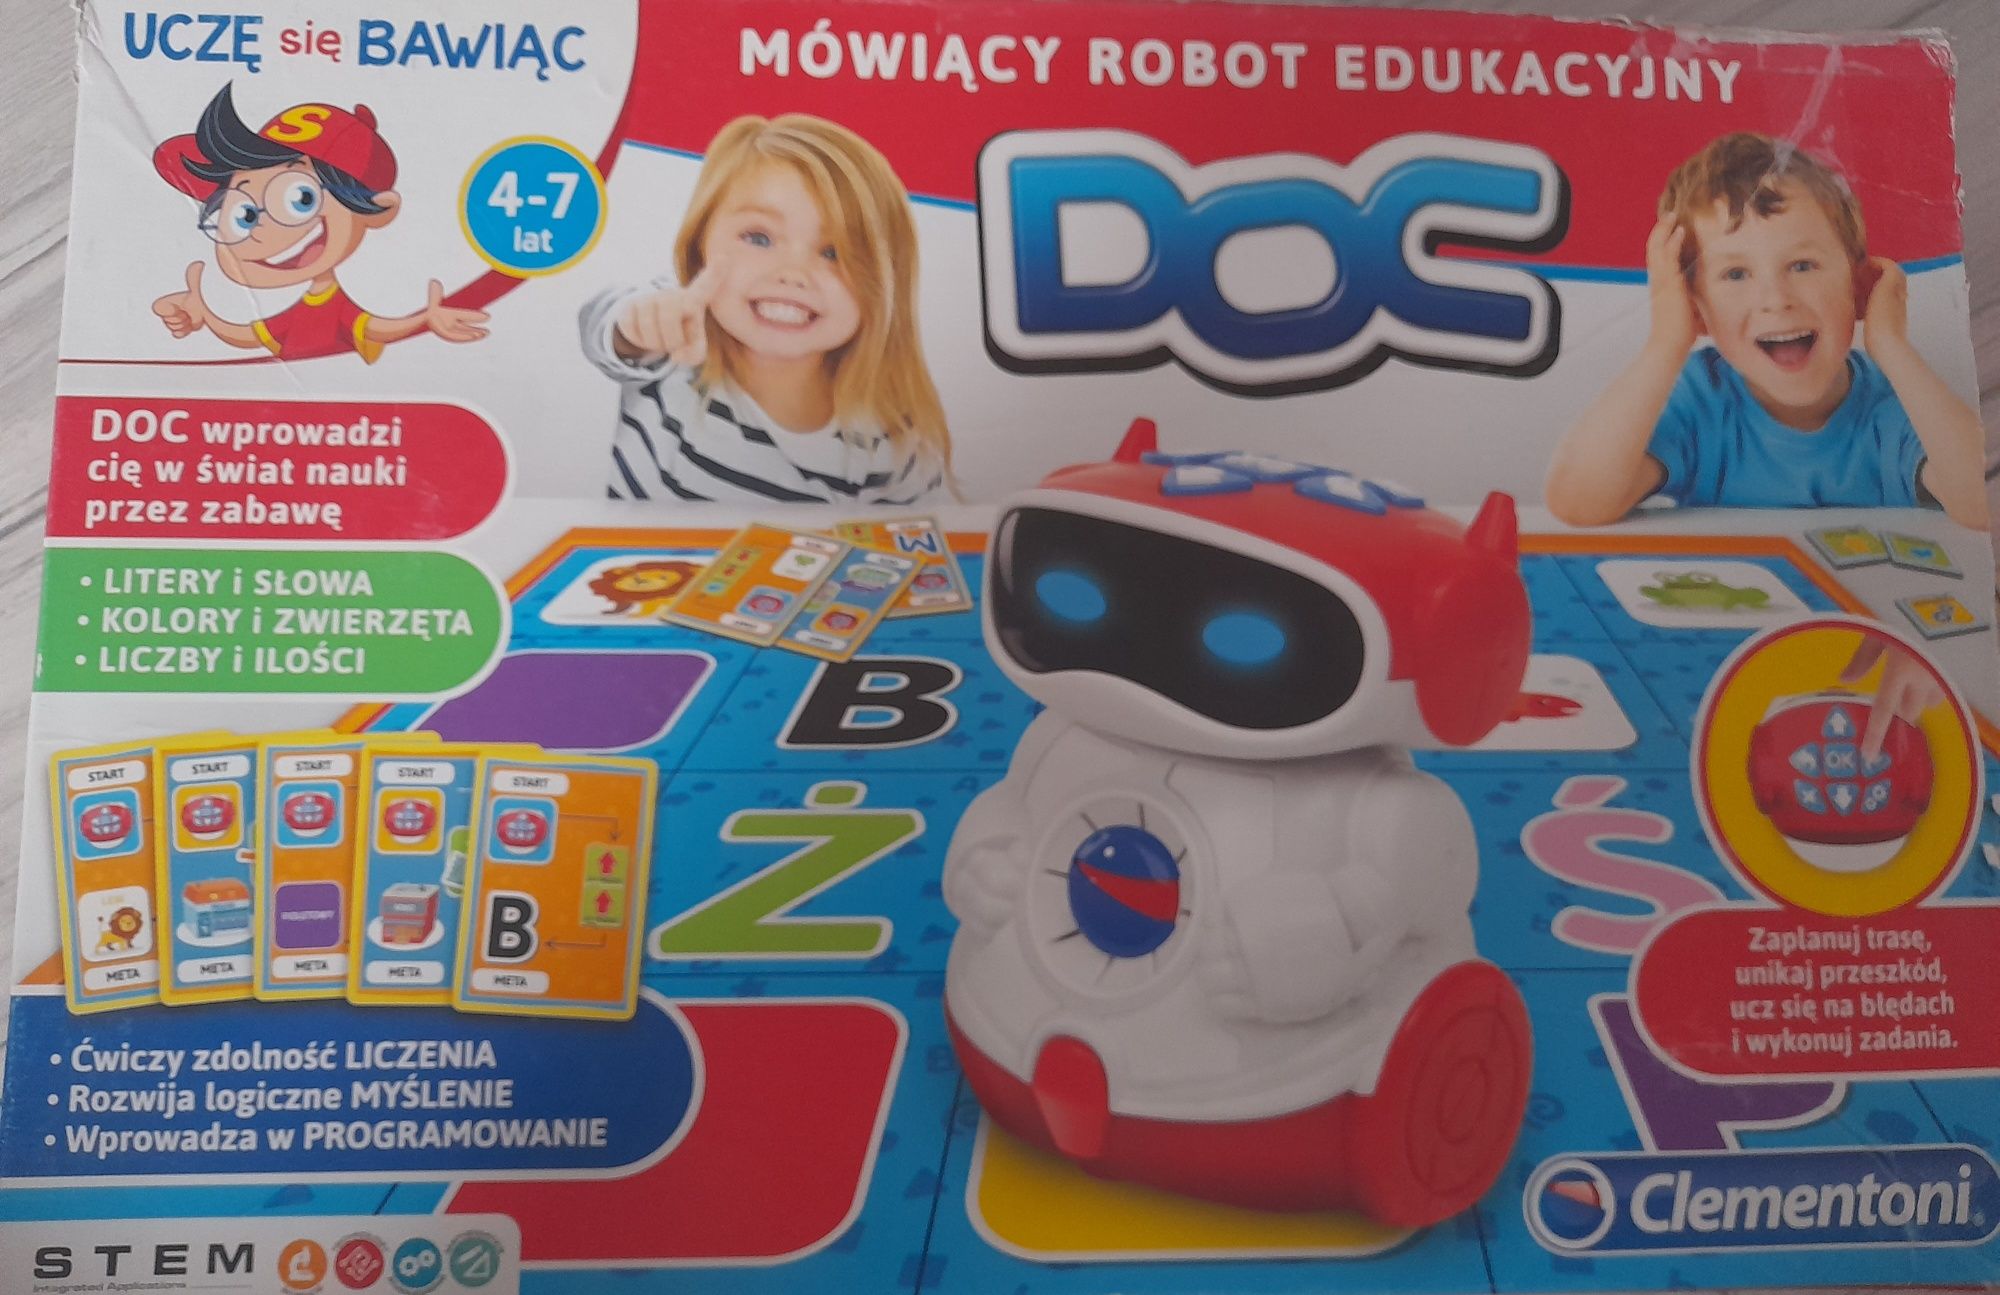 DOC Mowiacy Robot Edukacyjny